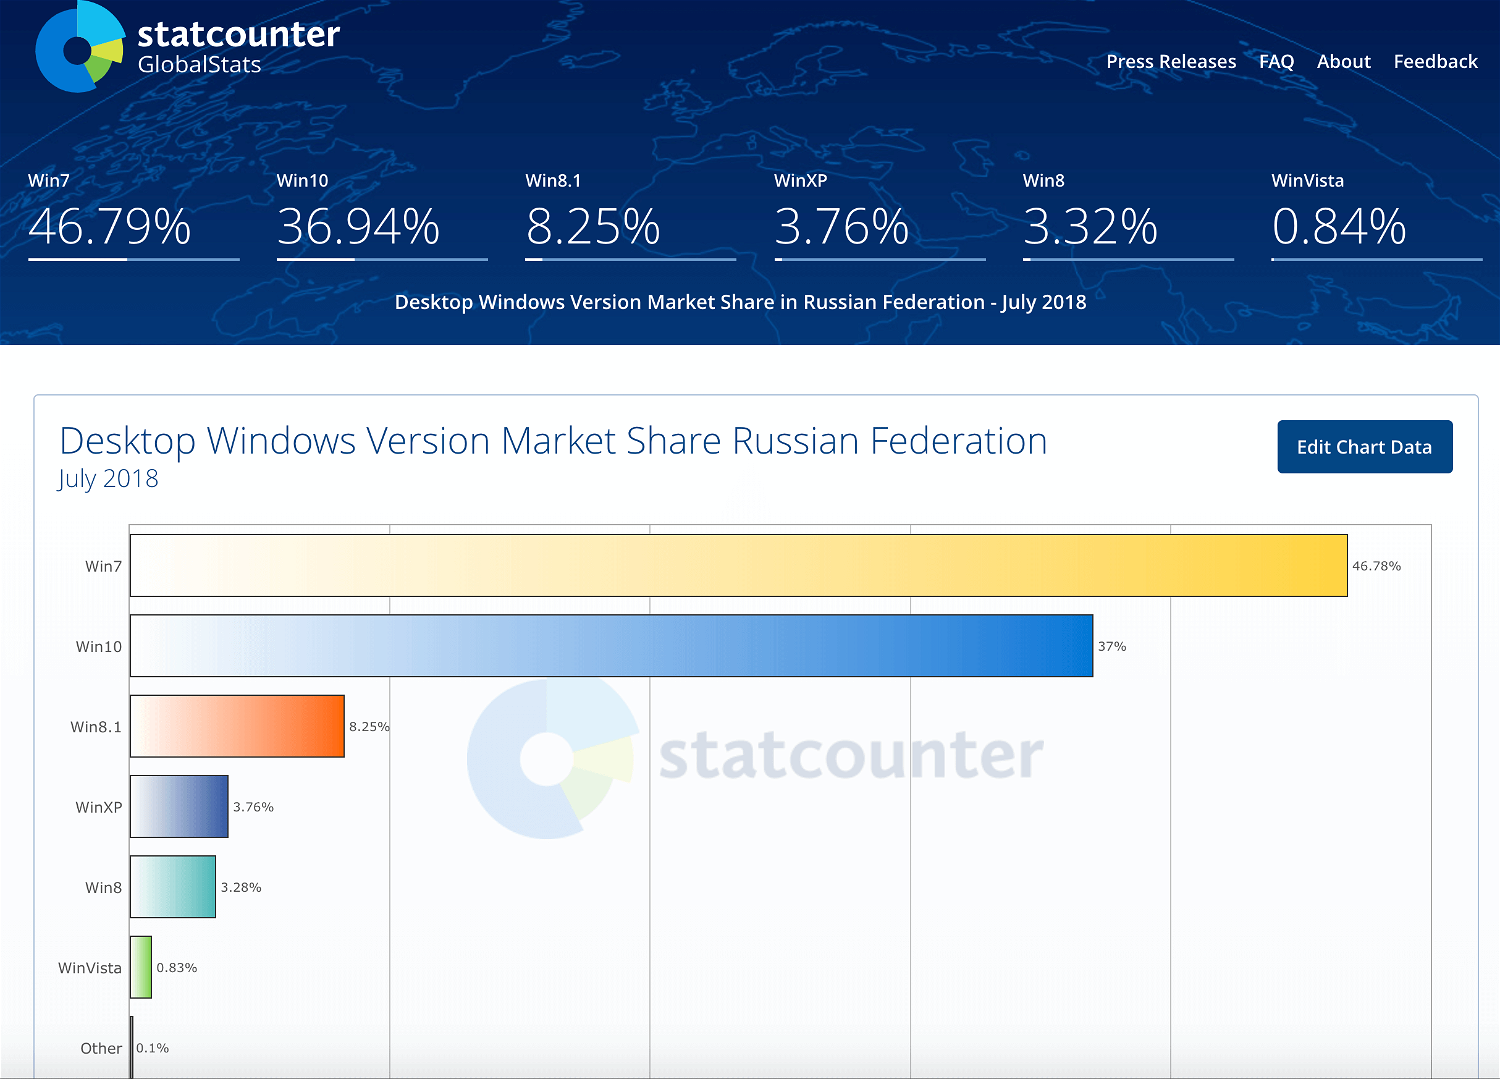 Більш свіжої операційній системі Windows 10 віддають перевагу тільки 36,94% російських користувачів